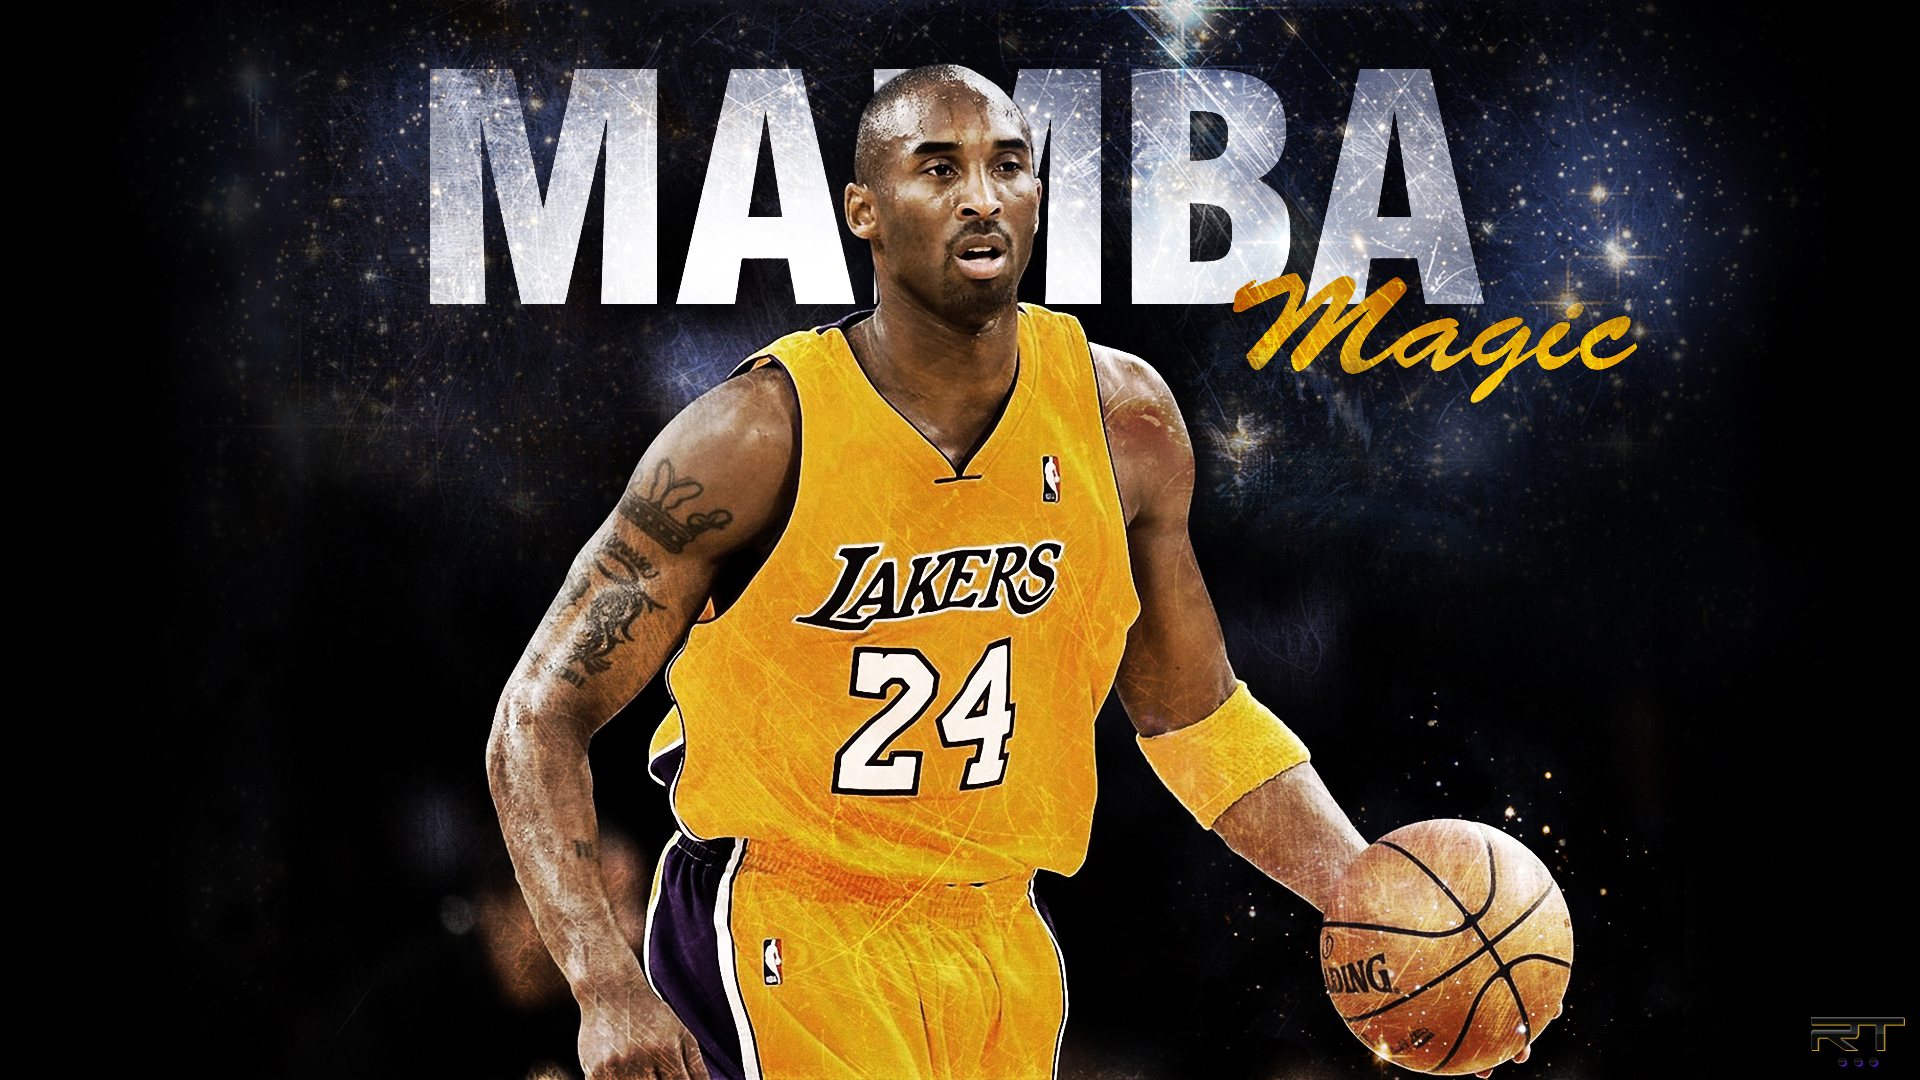 Mamba Magic Kobe Bryant Wallpaper